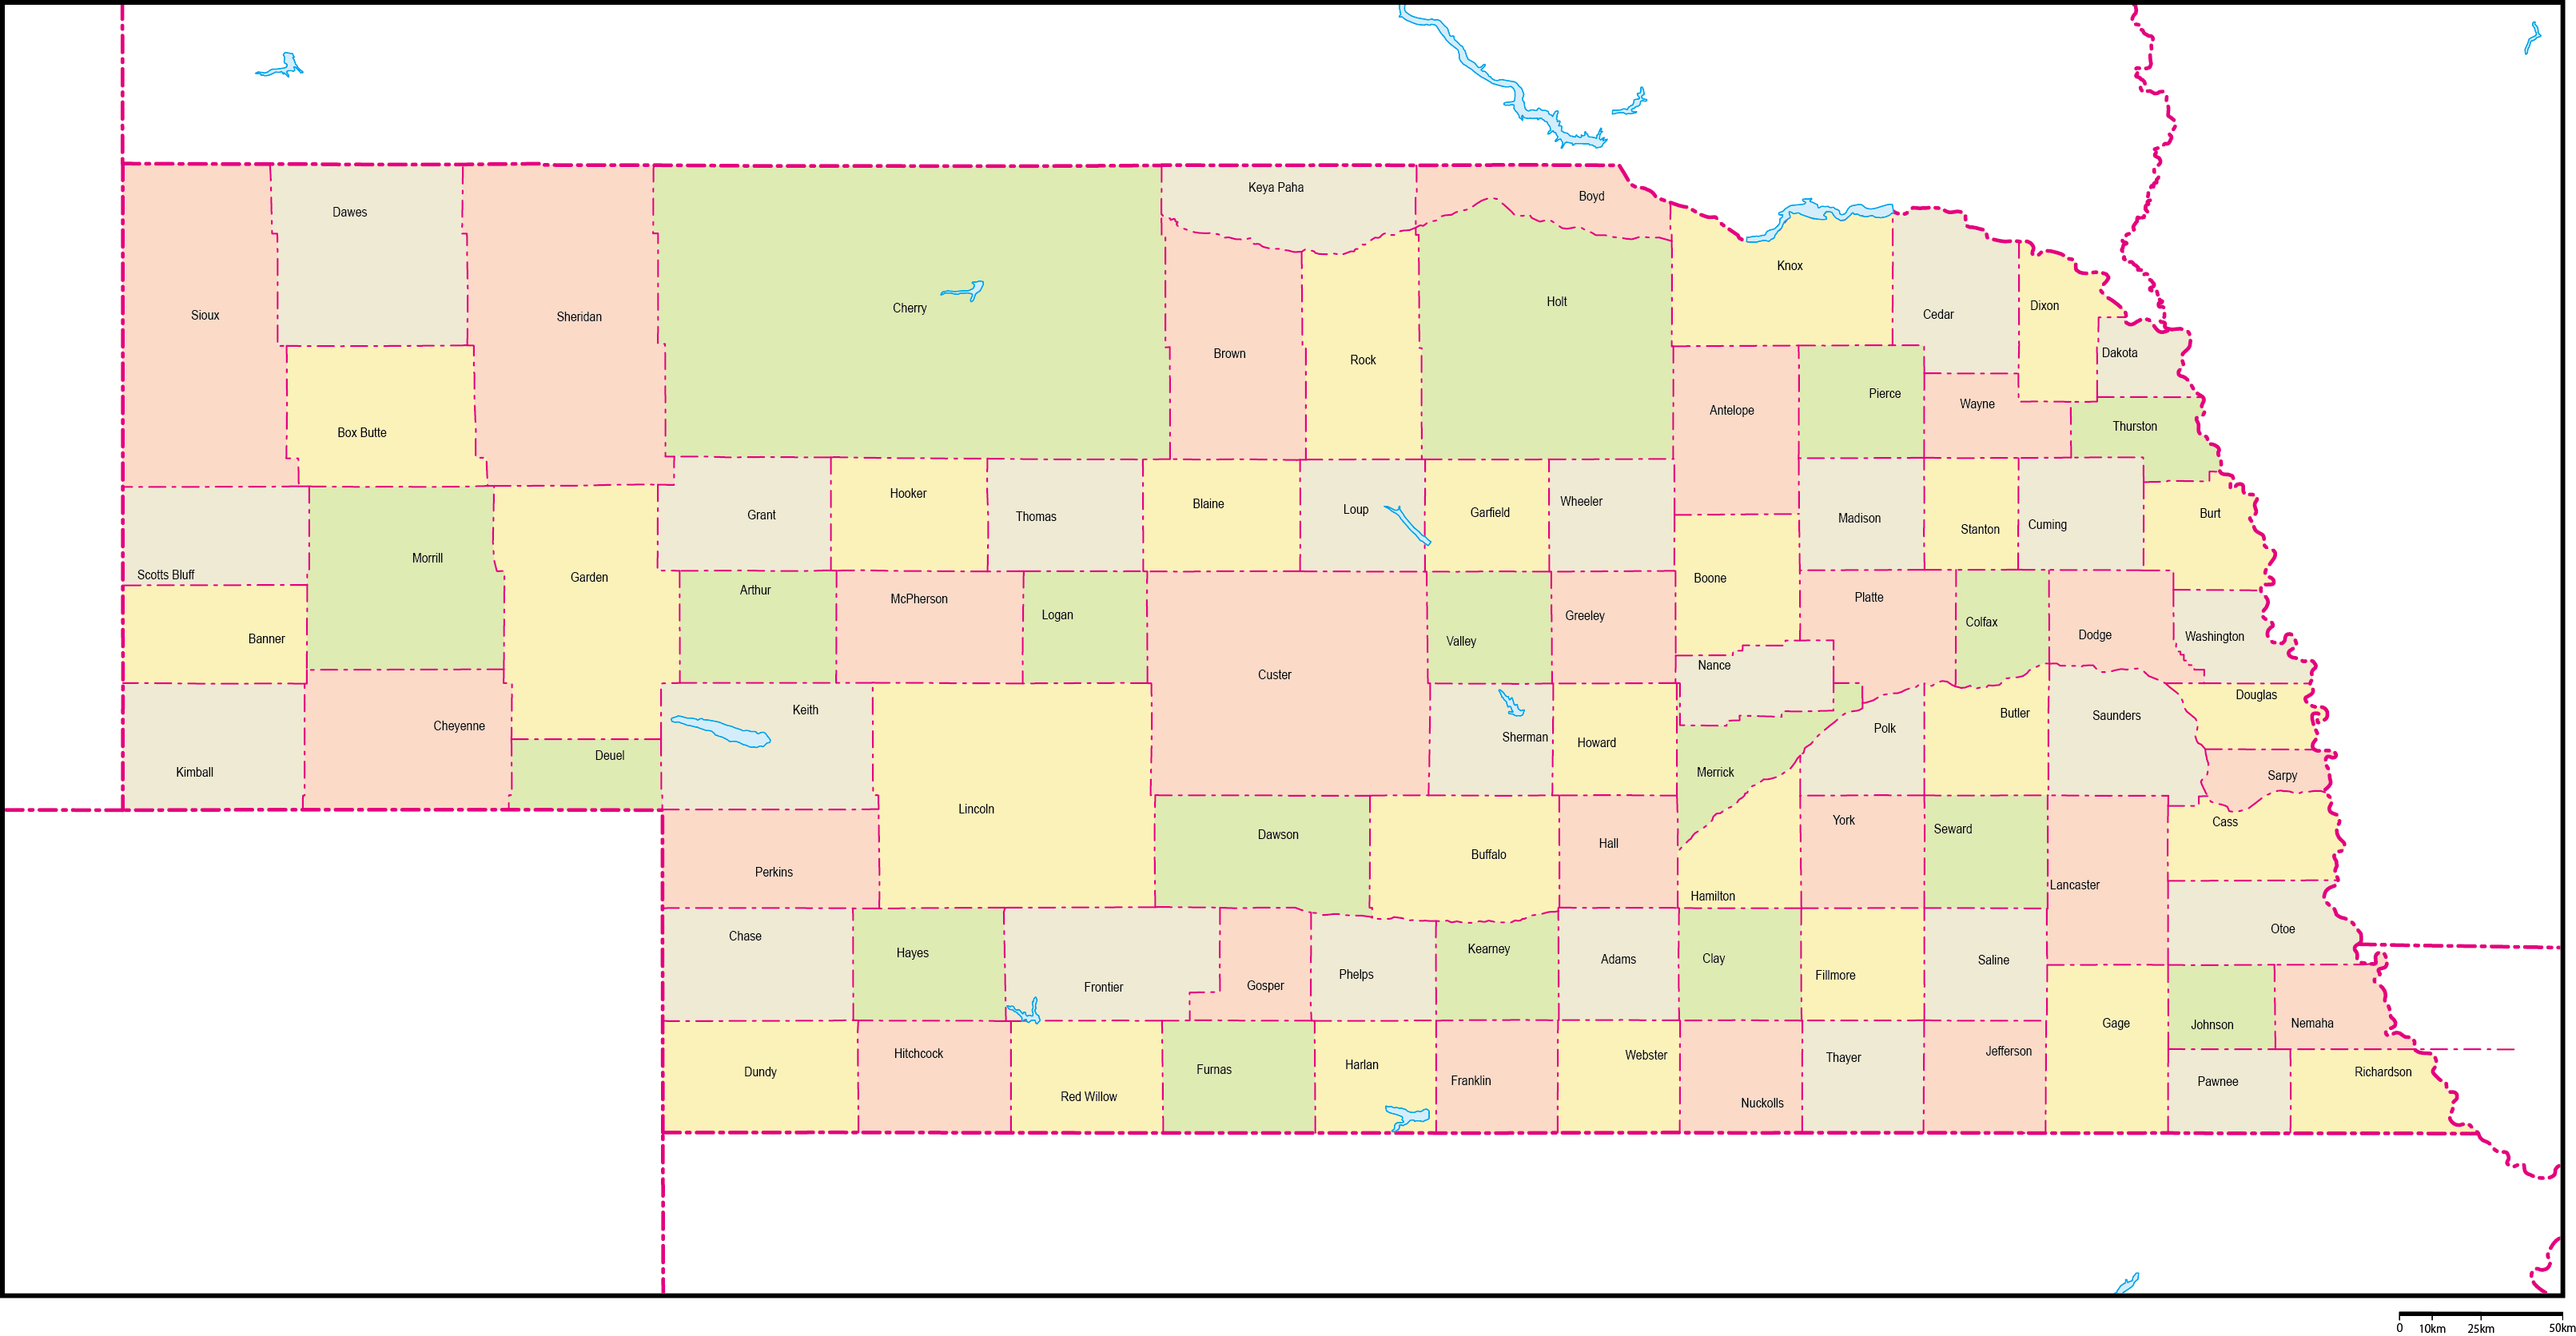 ネブラスカ州郡色分け地図郡名あり(英語)フリーデータの画像